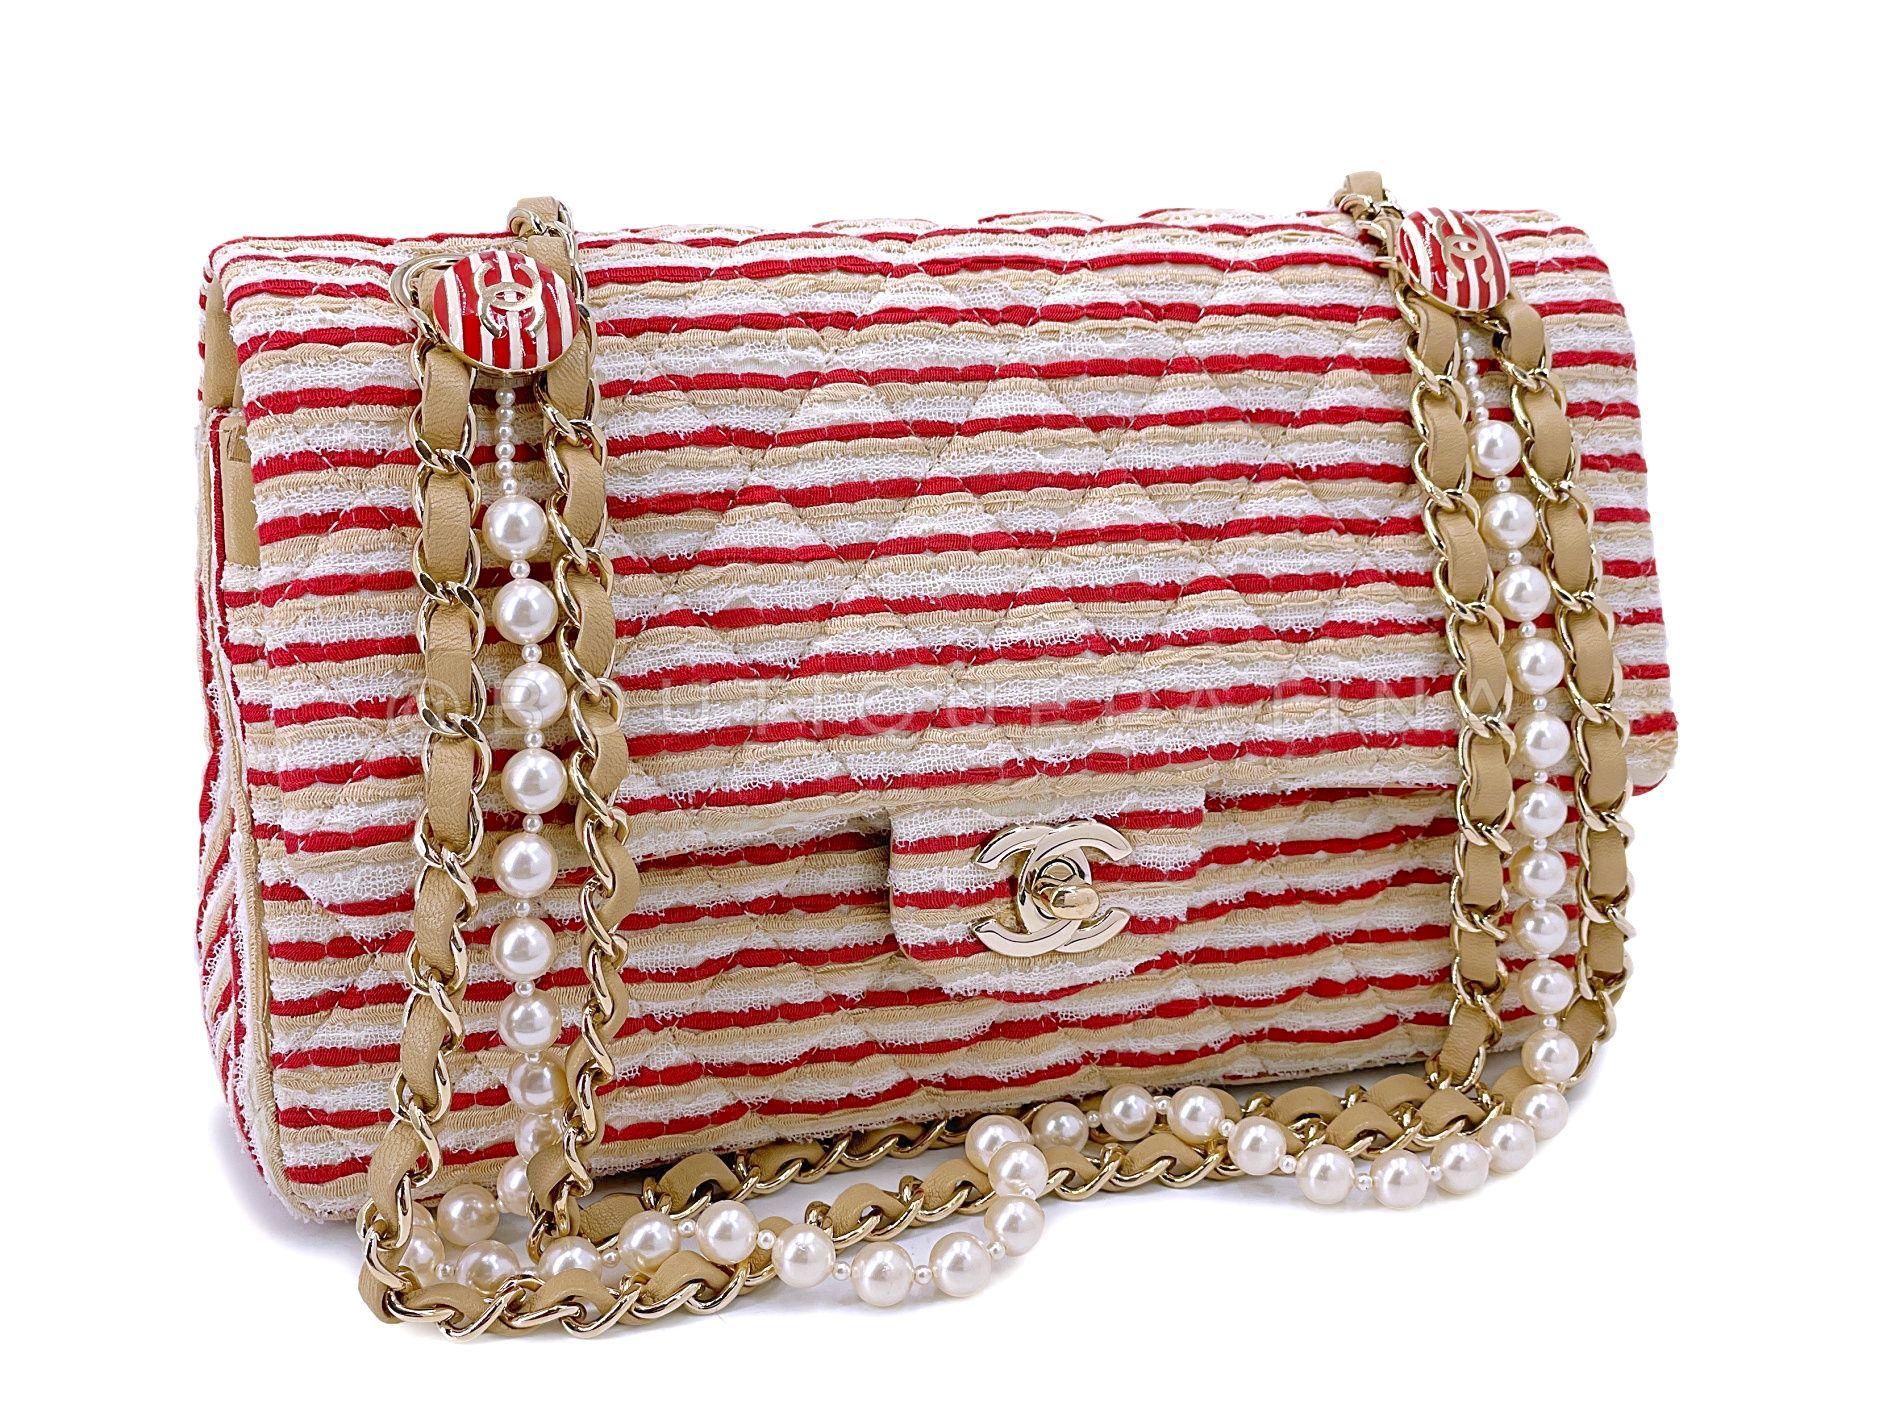 Article de magasin : 68029
Le sac emblématique du Graal est le Chanel Classic Flap. Convoité pour sa simplicité et son élégance - double bandoulière en chaîne tressée pouvant être portée courte ou longue, fermoir CC à verrou tournant, intérieur en